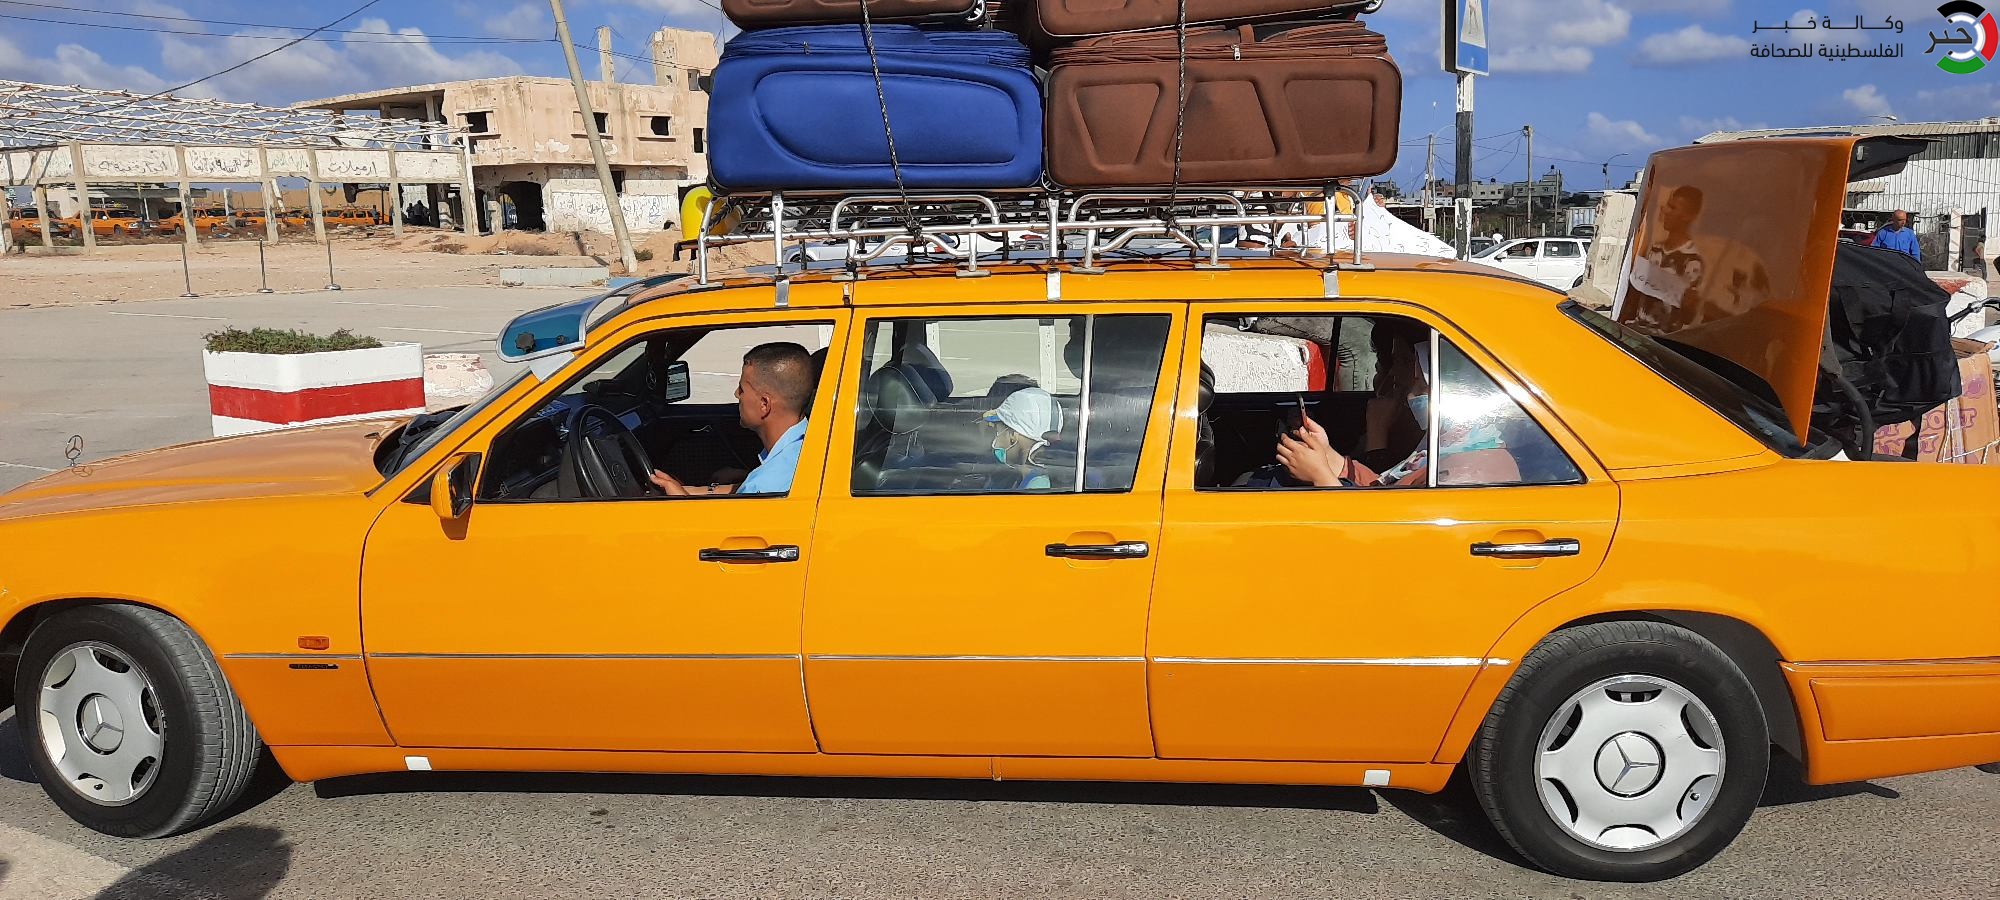 شاهد: وكالة "خبر" ترصد دخول المسافرين عبر معبر رفح البري إلى الأراضي المصرية